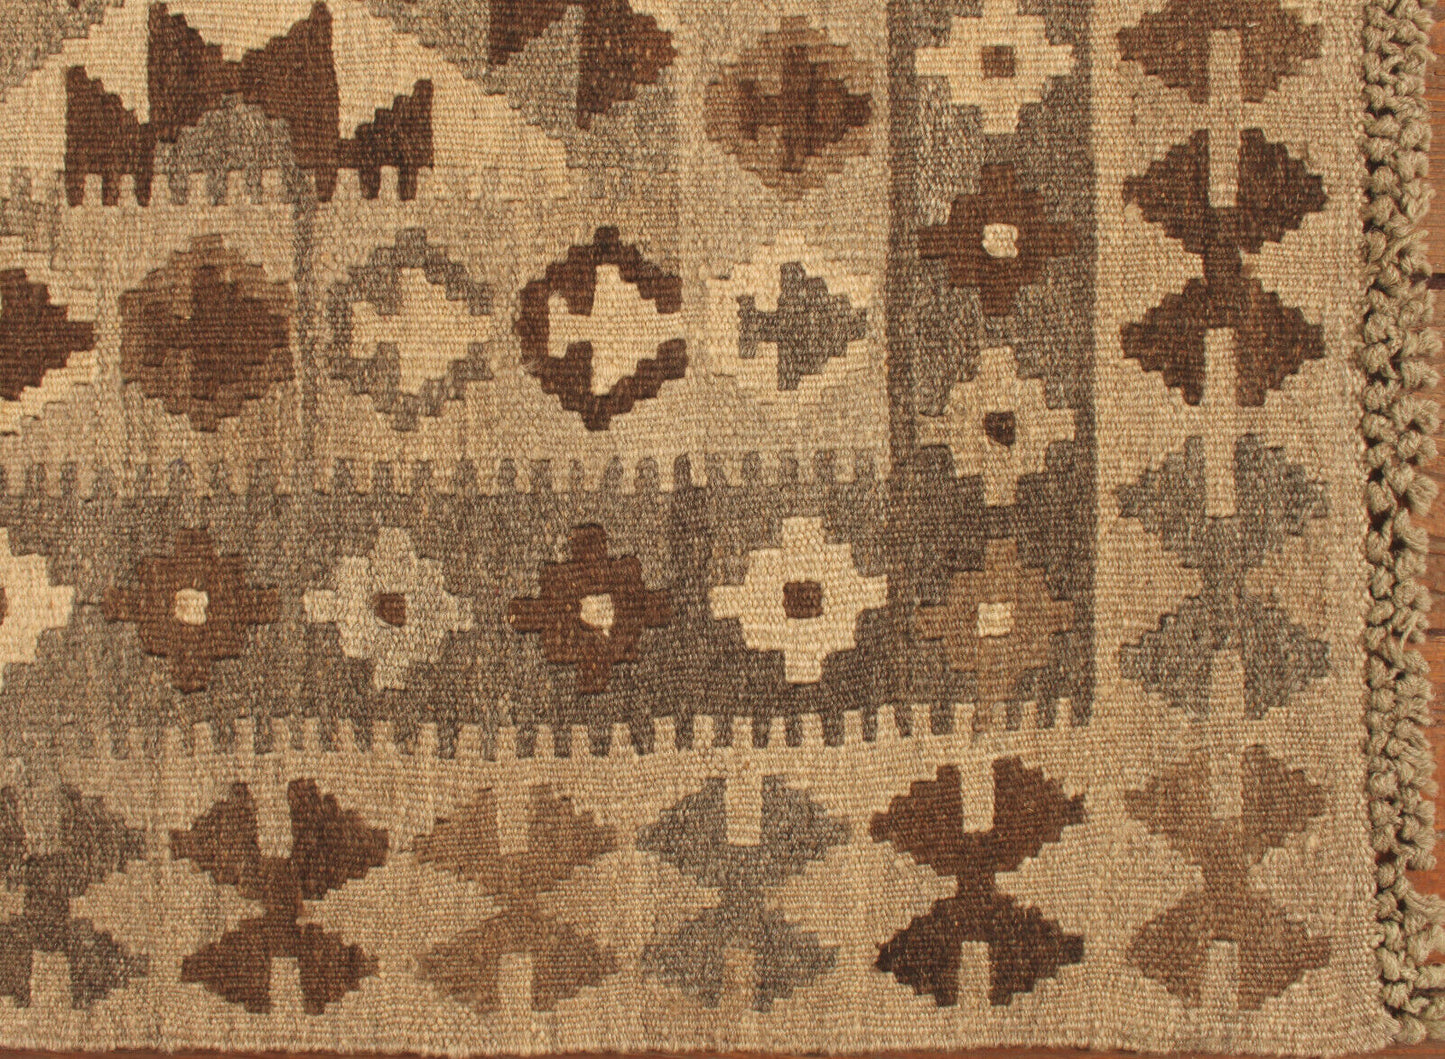 Detailed shot of the wool material used in the Handmade Vintage Afghan Flatweave Kilim